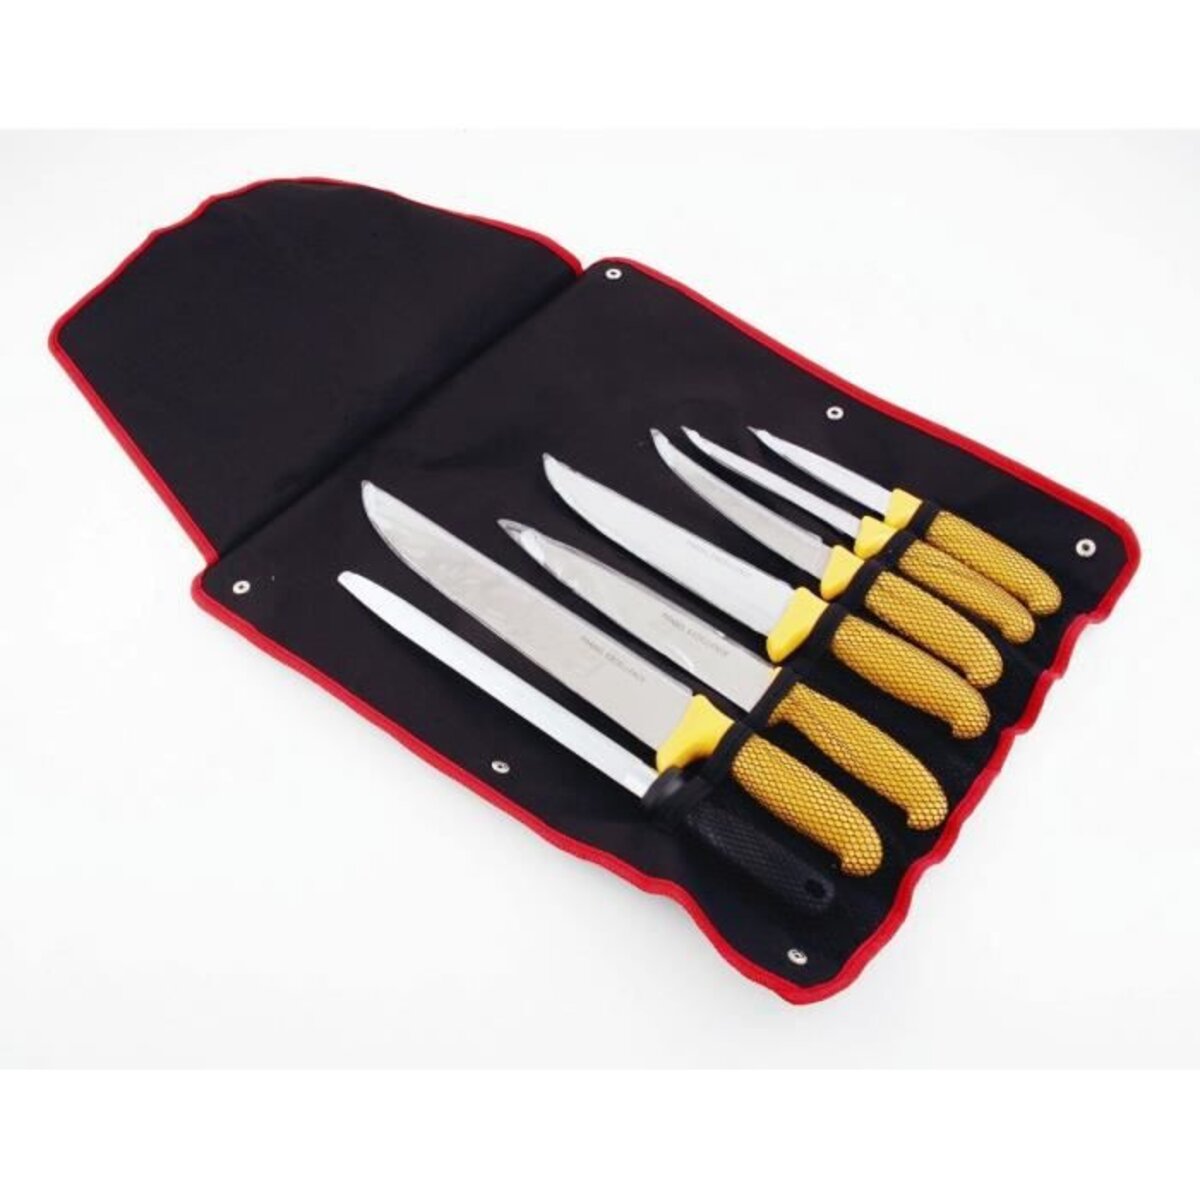 Malette de 22 couteaux et fourchettes - Pradel excellence - Label